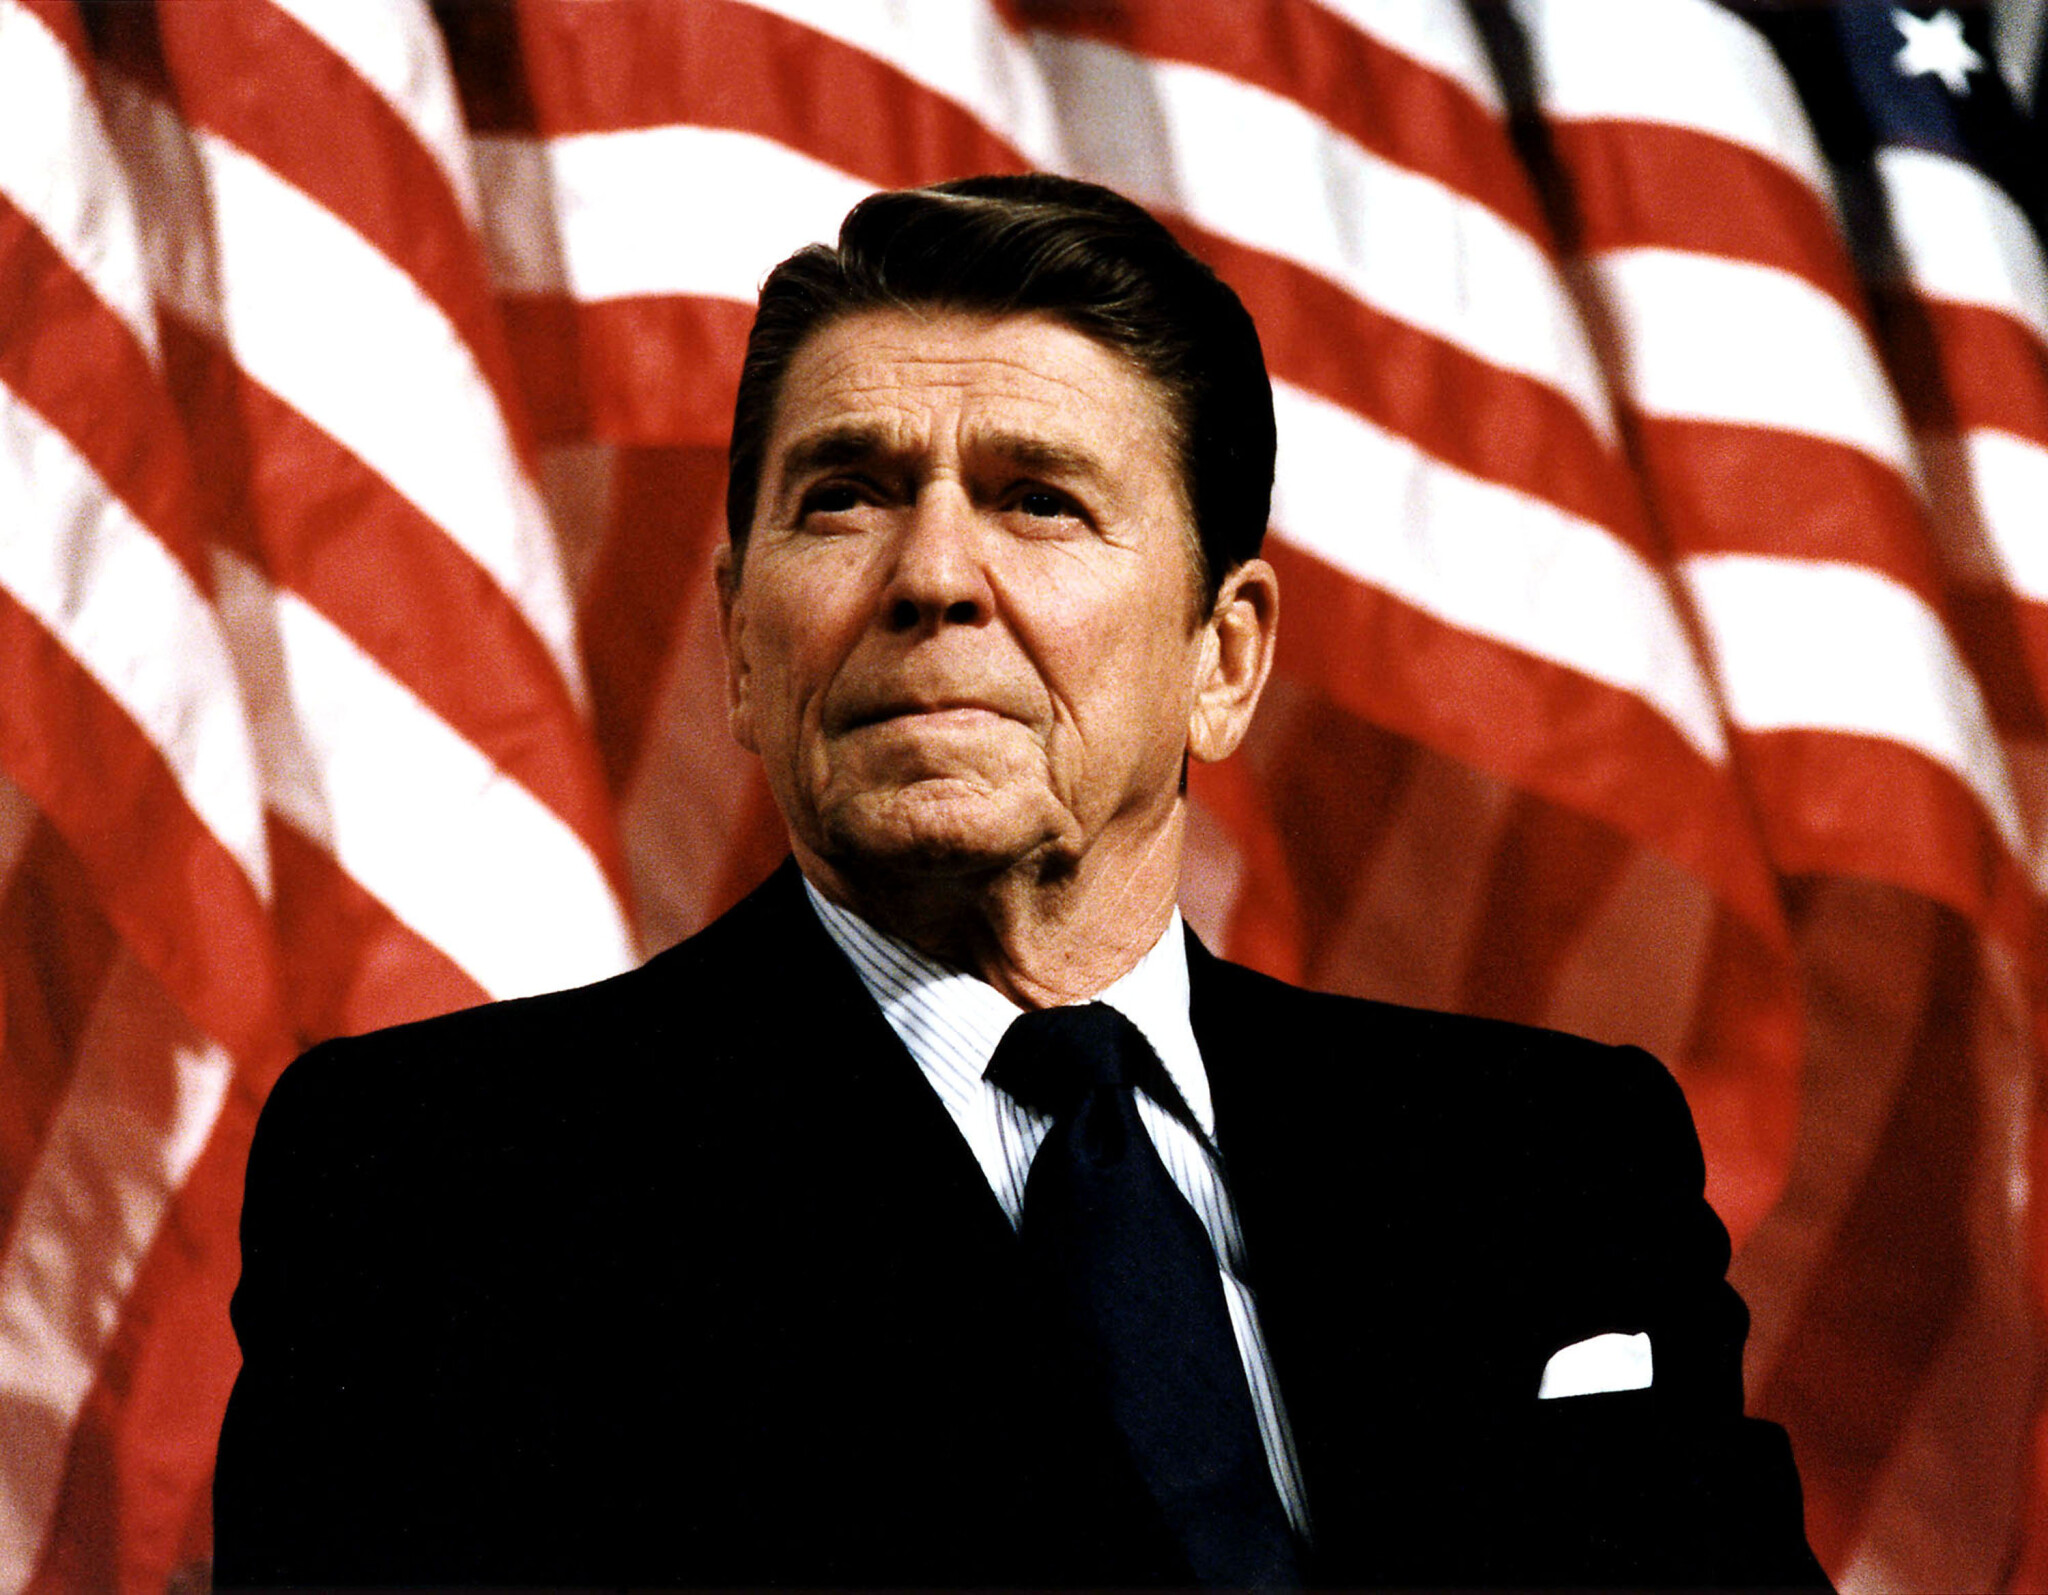 Forbes History: Prezident s kolty proklatě nízko. Ronald Reagan byl kovbojem, který porazil rudé